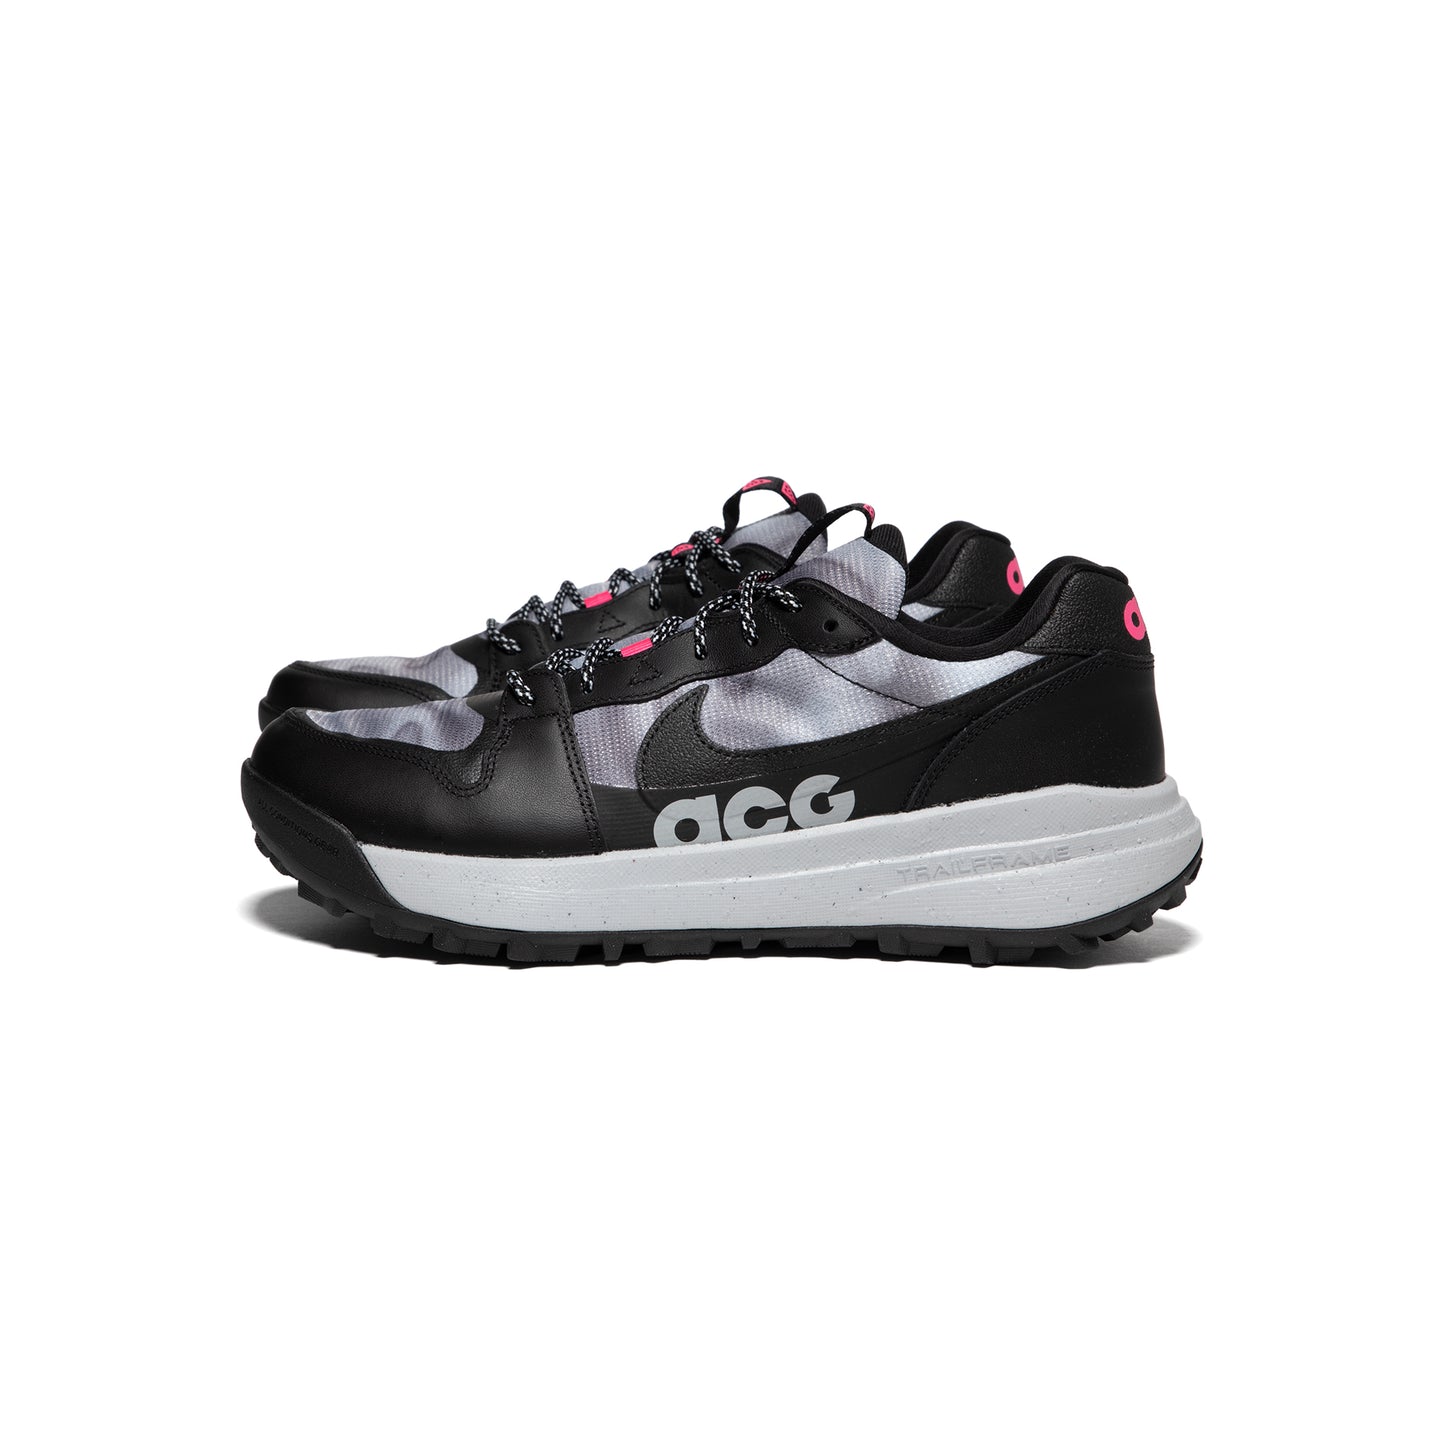 Nike ACG Lowcate SE (Black/Hyper Pink/Wolf Grey)